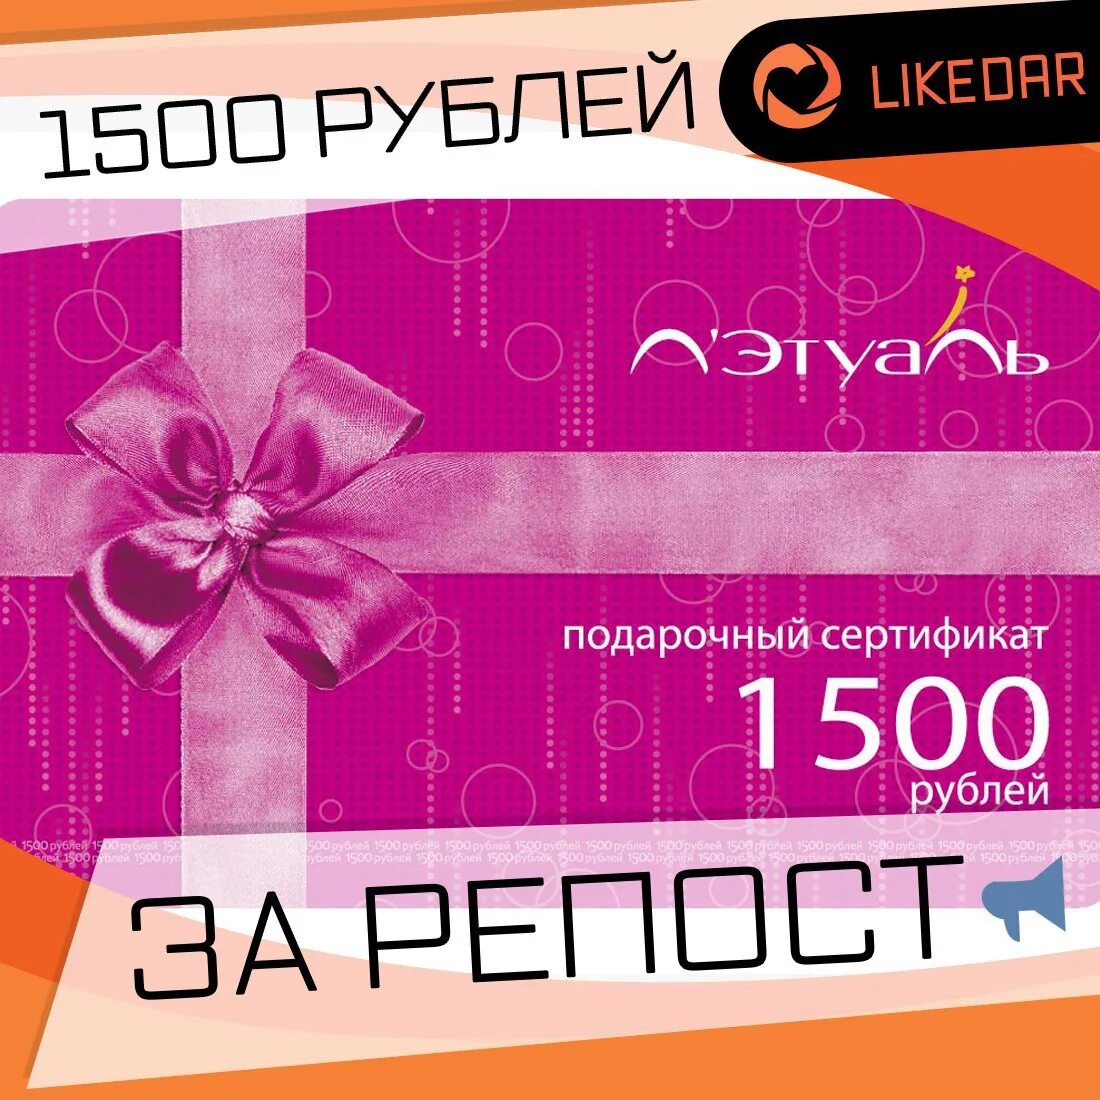 Подарочный сертификат 1500 рублей. Подарочная карта. Этуаль подарочный сертификат. Подарочный сертификат на 1500 руб. Можно обменять подарочный сертификат летуаль на деньги